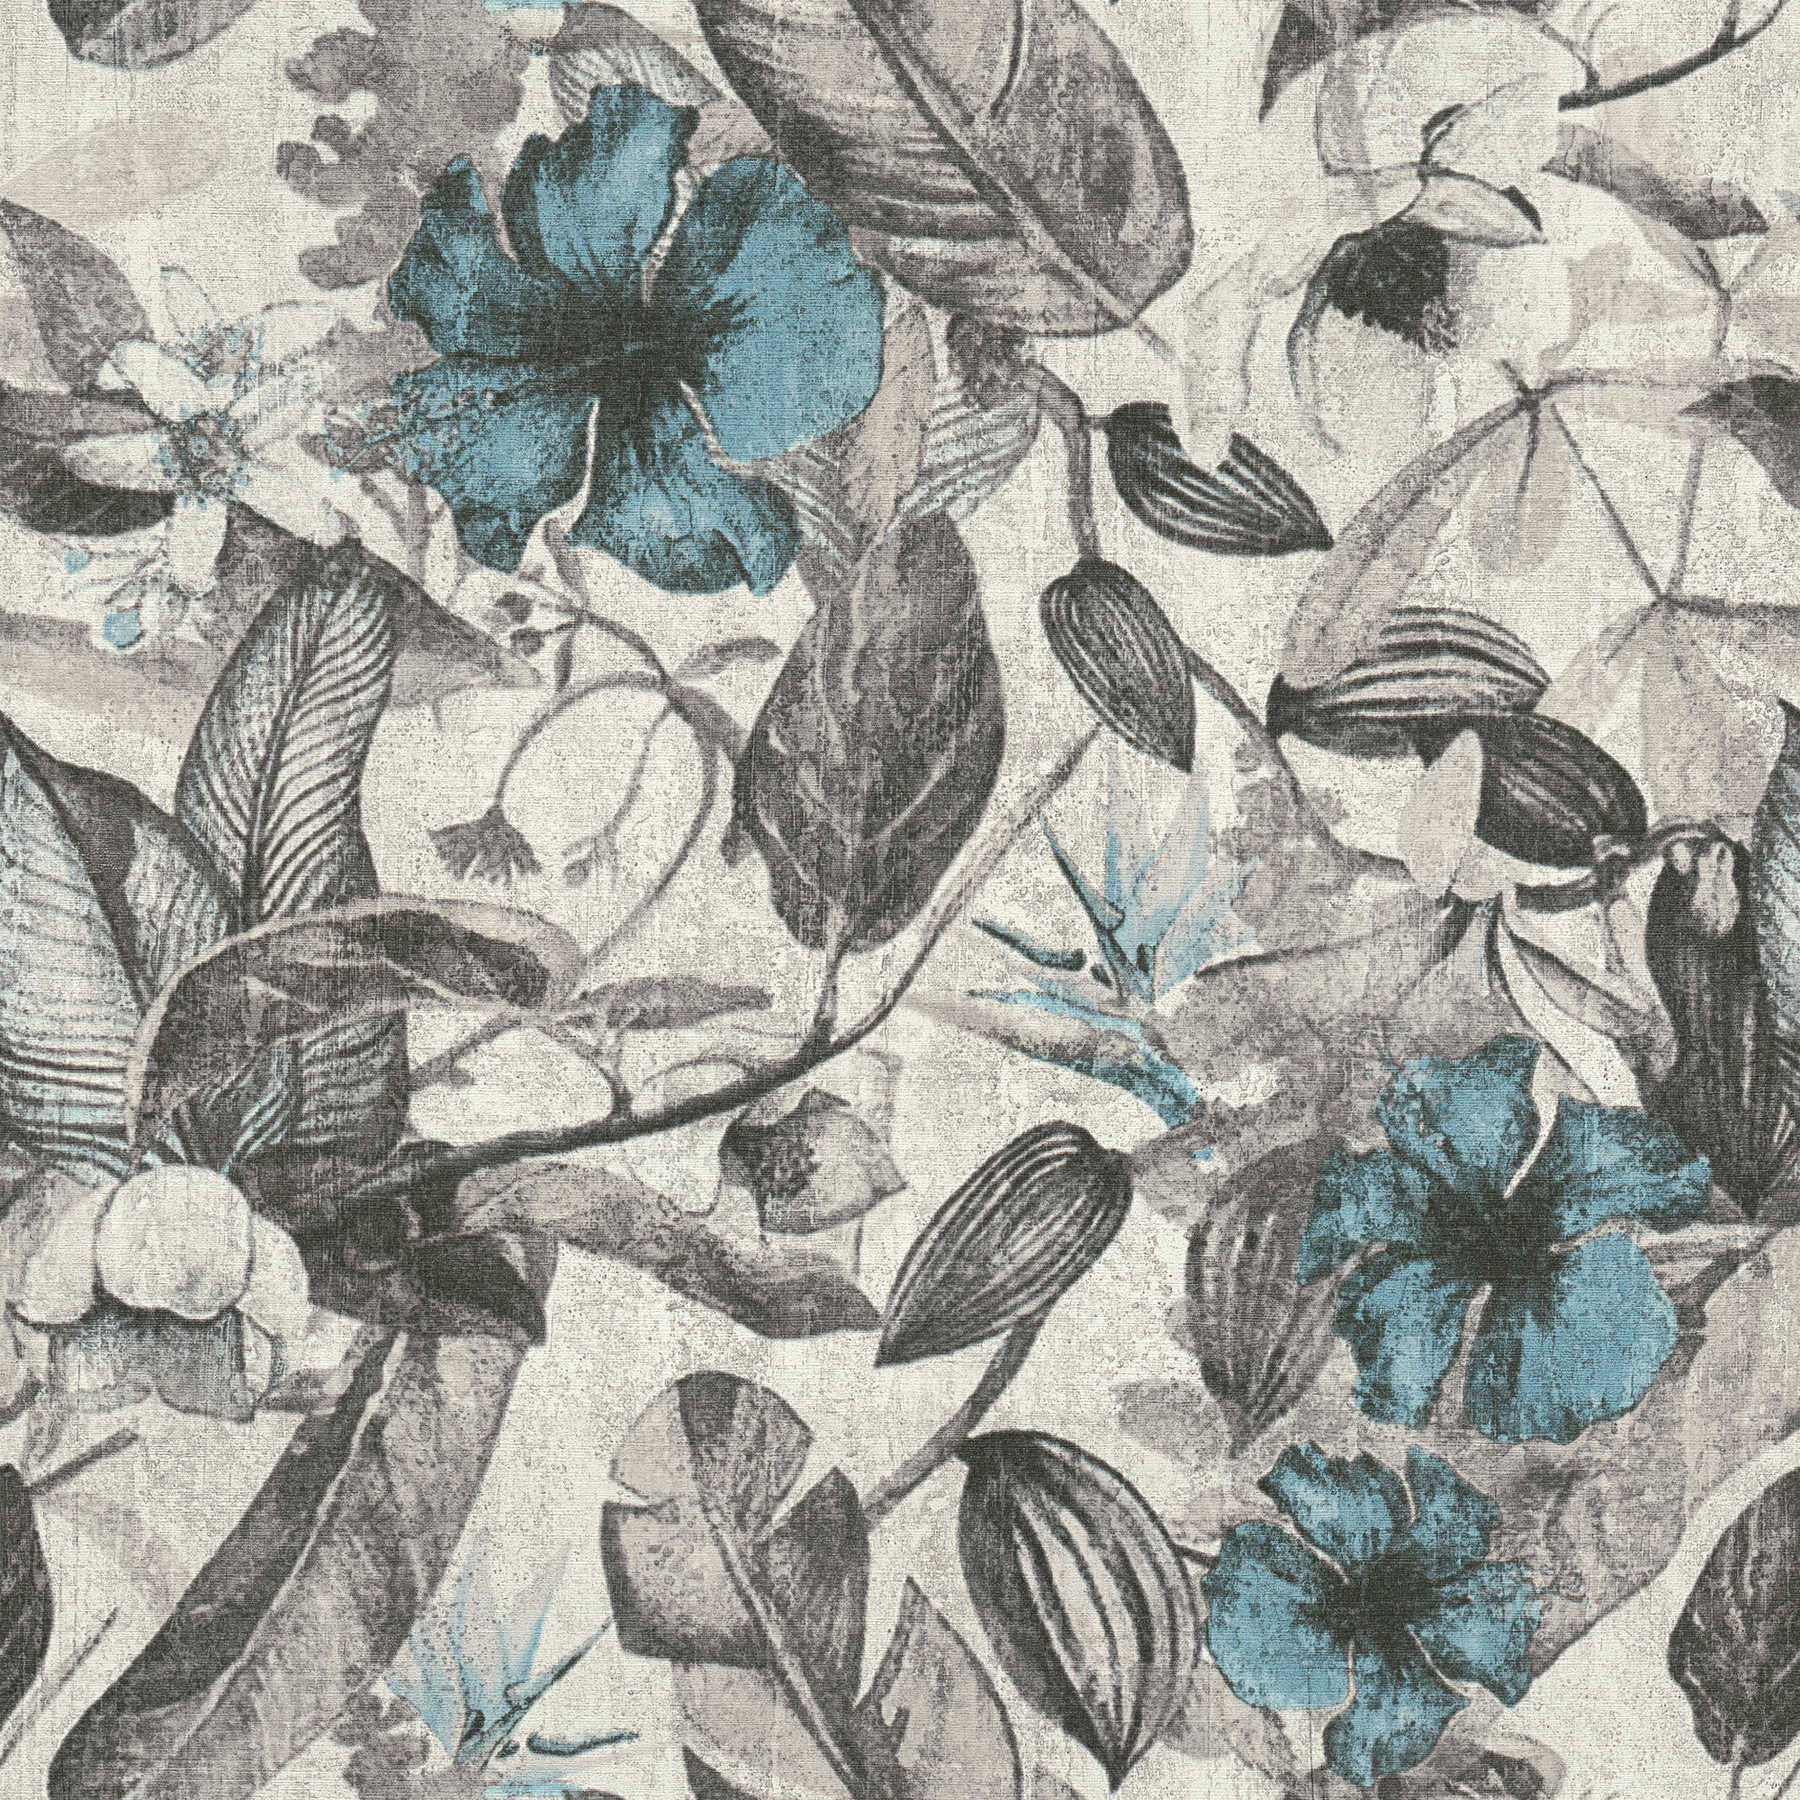 Tapete tropisches Blütenmuster im Textil-Look – Blau, Grau, Schwarz
